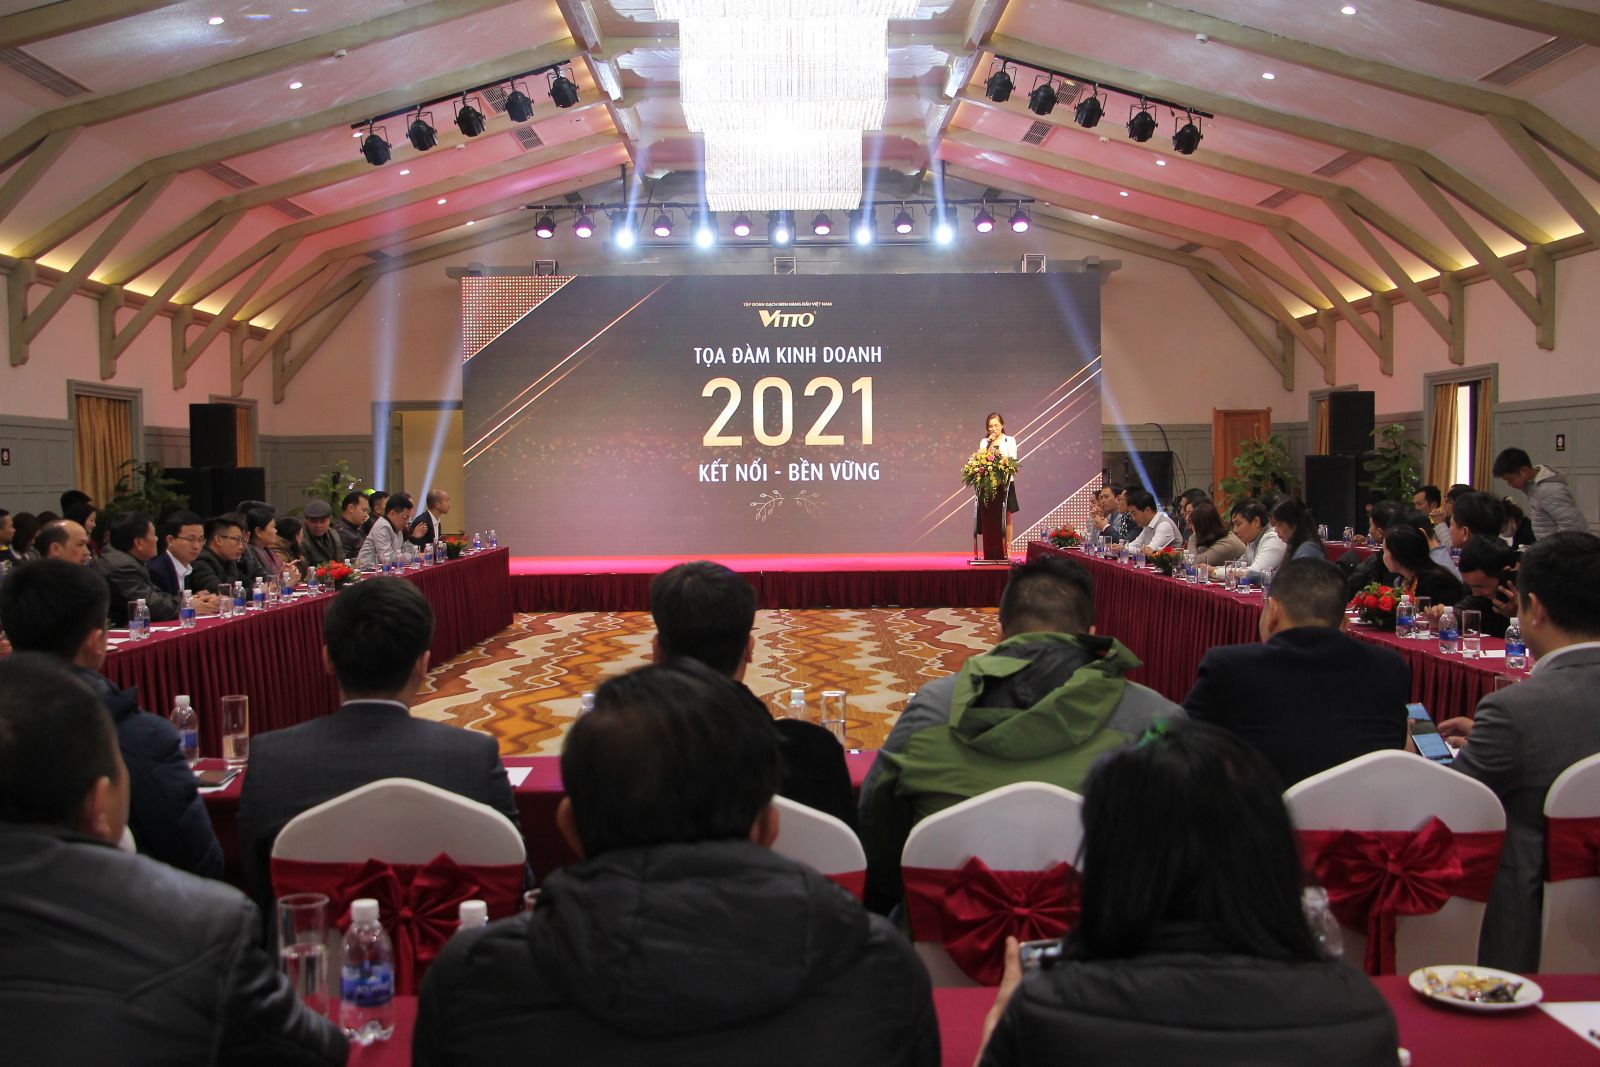 Vitto Group: Tọa đàm kinh doanh 2021 Kết nối – Bền vững 